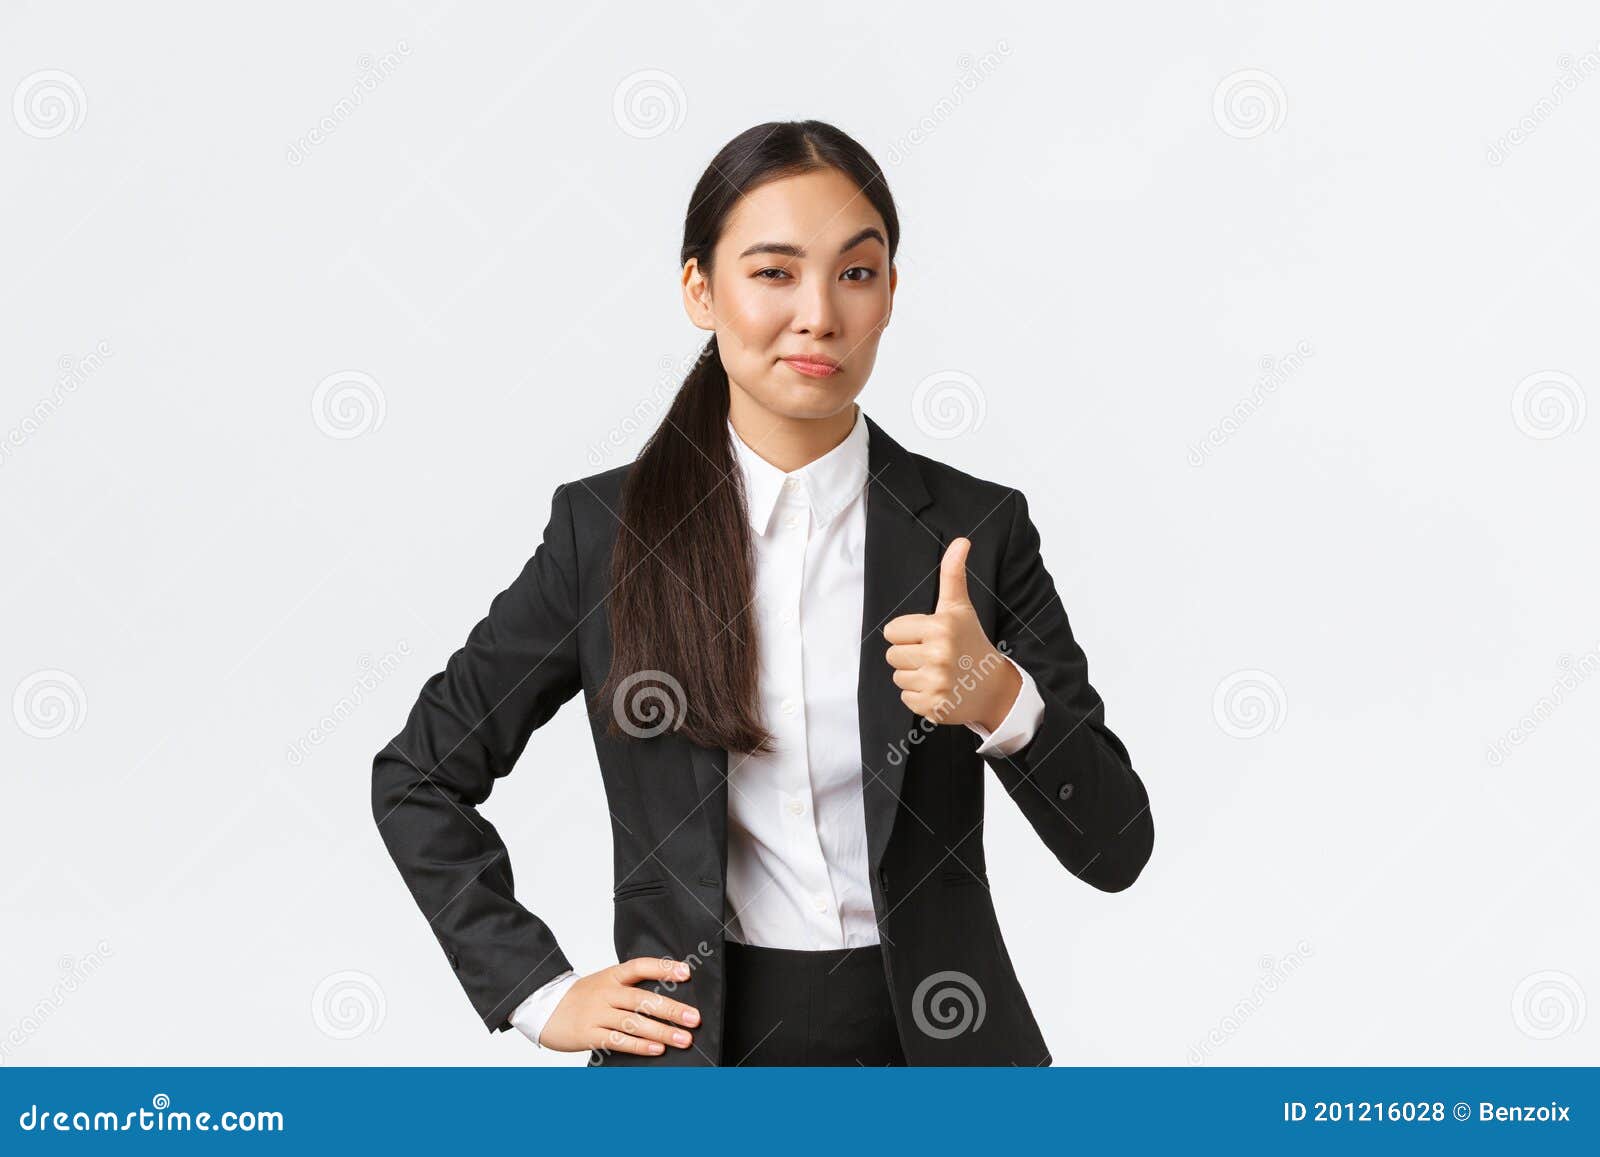 https://thumbs.dreamstime.com/z/feliz-empresaria-mujer-jefa-con-traje-negro-satisfecho-su-trabajo-mostrando-pulgares-y-asintiendo-complacida-sup-en-aprobaci%C3%B3n-201216028.jpg